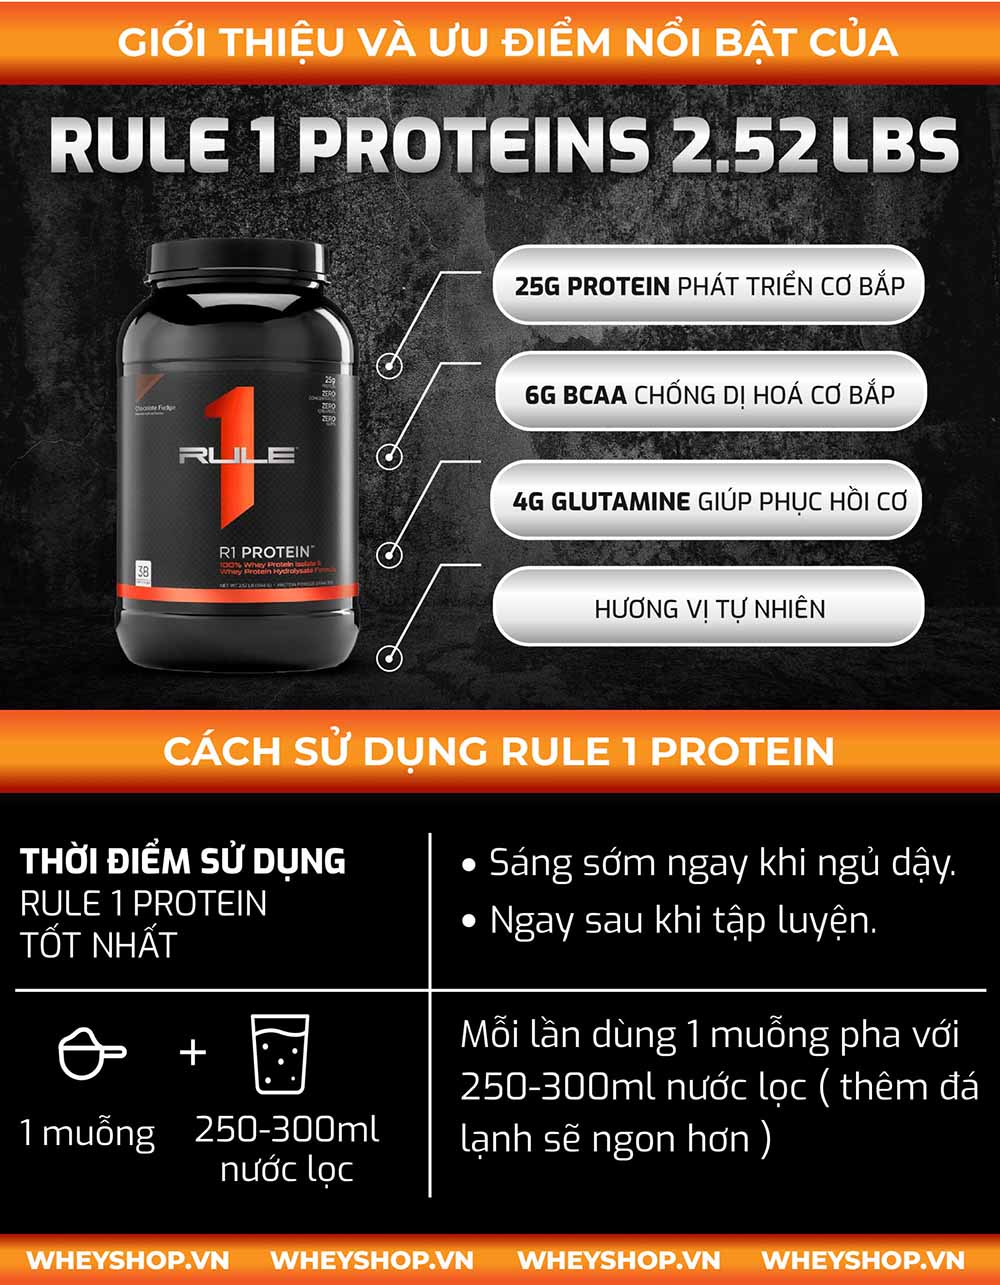 Rule 1 Proteins 2.52Lbs là sản phẩm Whey Protein tinh khiết hỗ trợ tăng cơ giảm mỡ hiệu quả. Sản phẩm được nhập khẩu chính hãng, cam kết giá rẻ tốt nhất tại Hà Nội TpHCM.